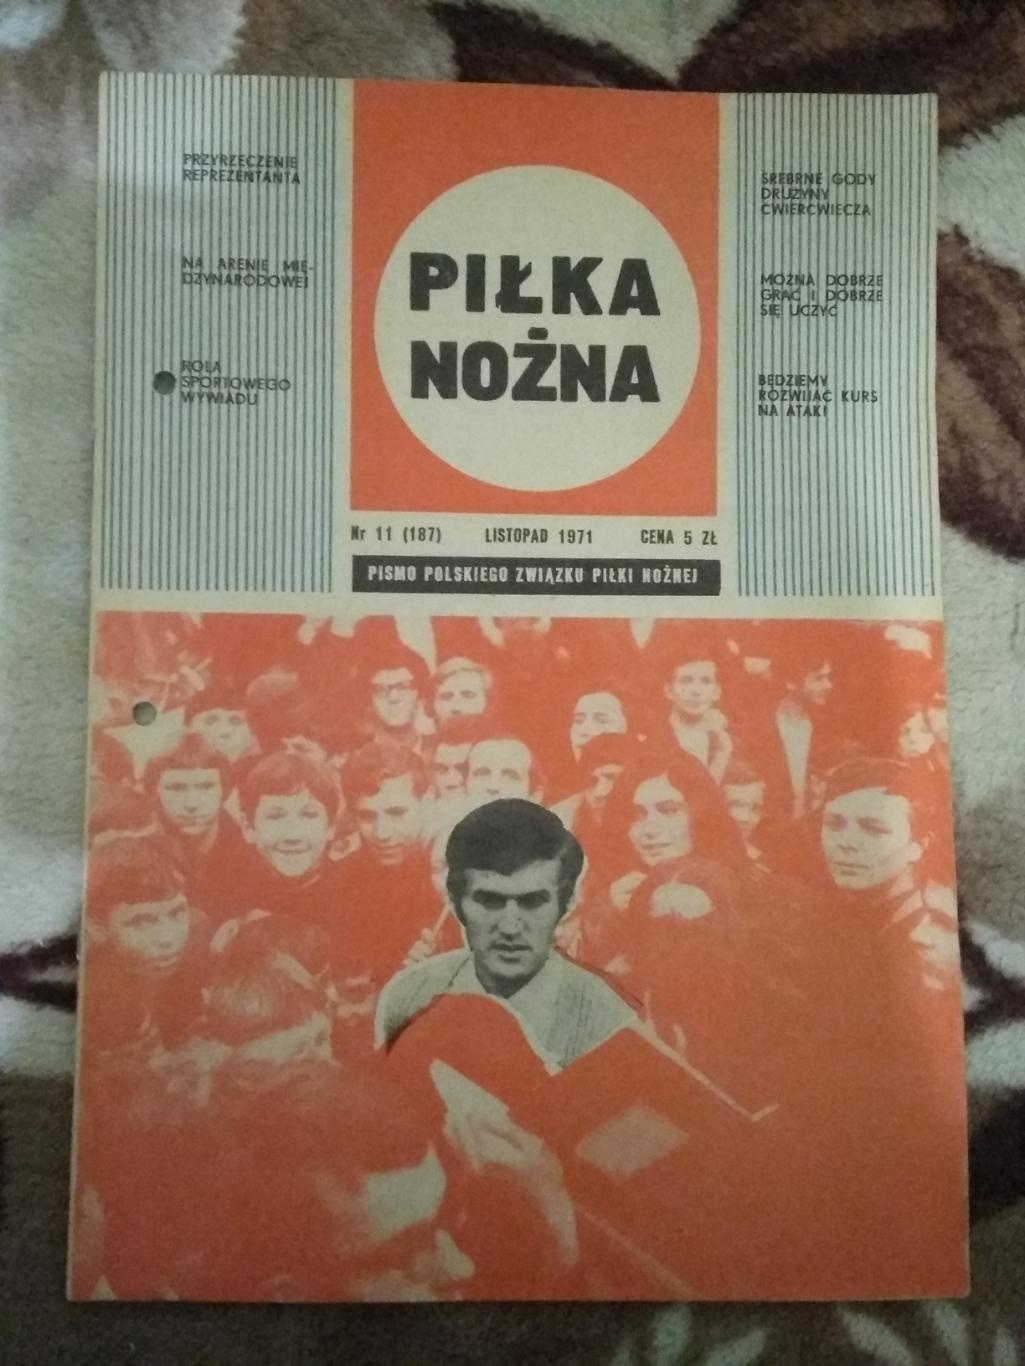 Газета.Футбол.Пилка ножна № 11 1971 г. (Польша).